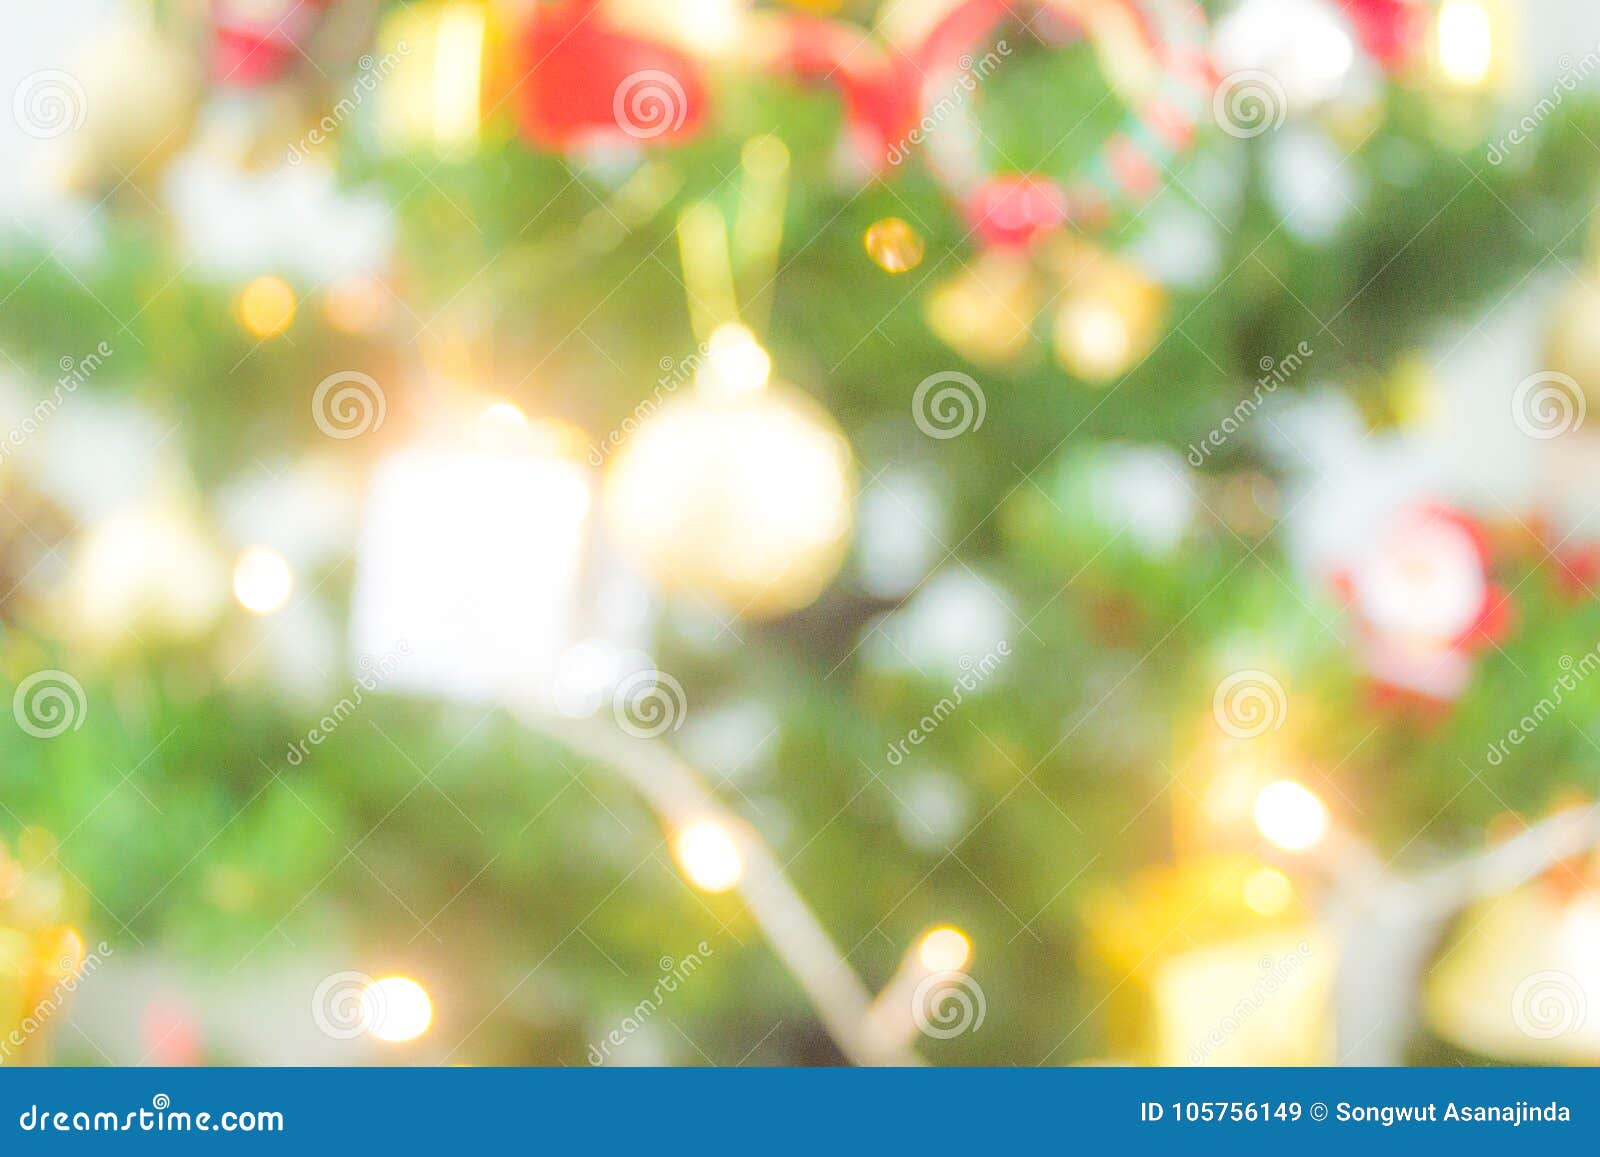 Christmas Tree: Đón Giáng sinh với cây thông noel lung linh và đầy màu sắc. Bức ảnh này sẽ giúp bạn cảm nhận được không khí của mùa lễ hội đang tới rất gần.